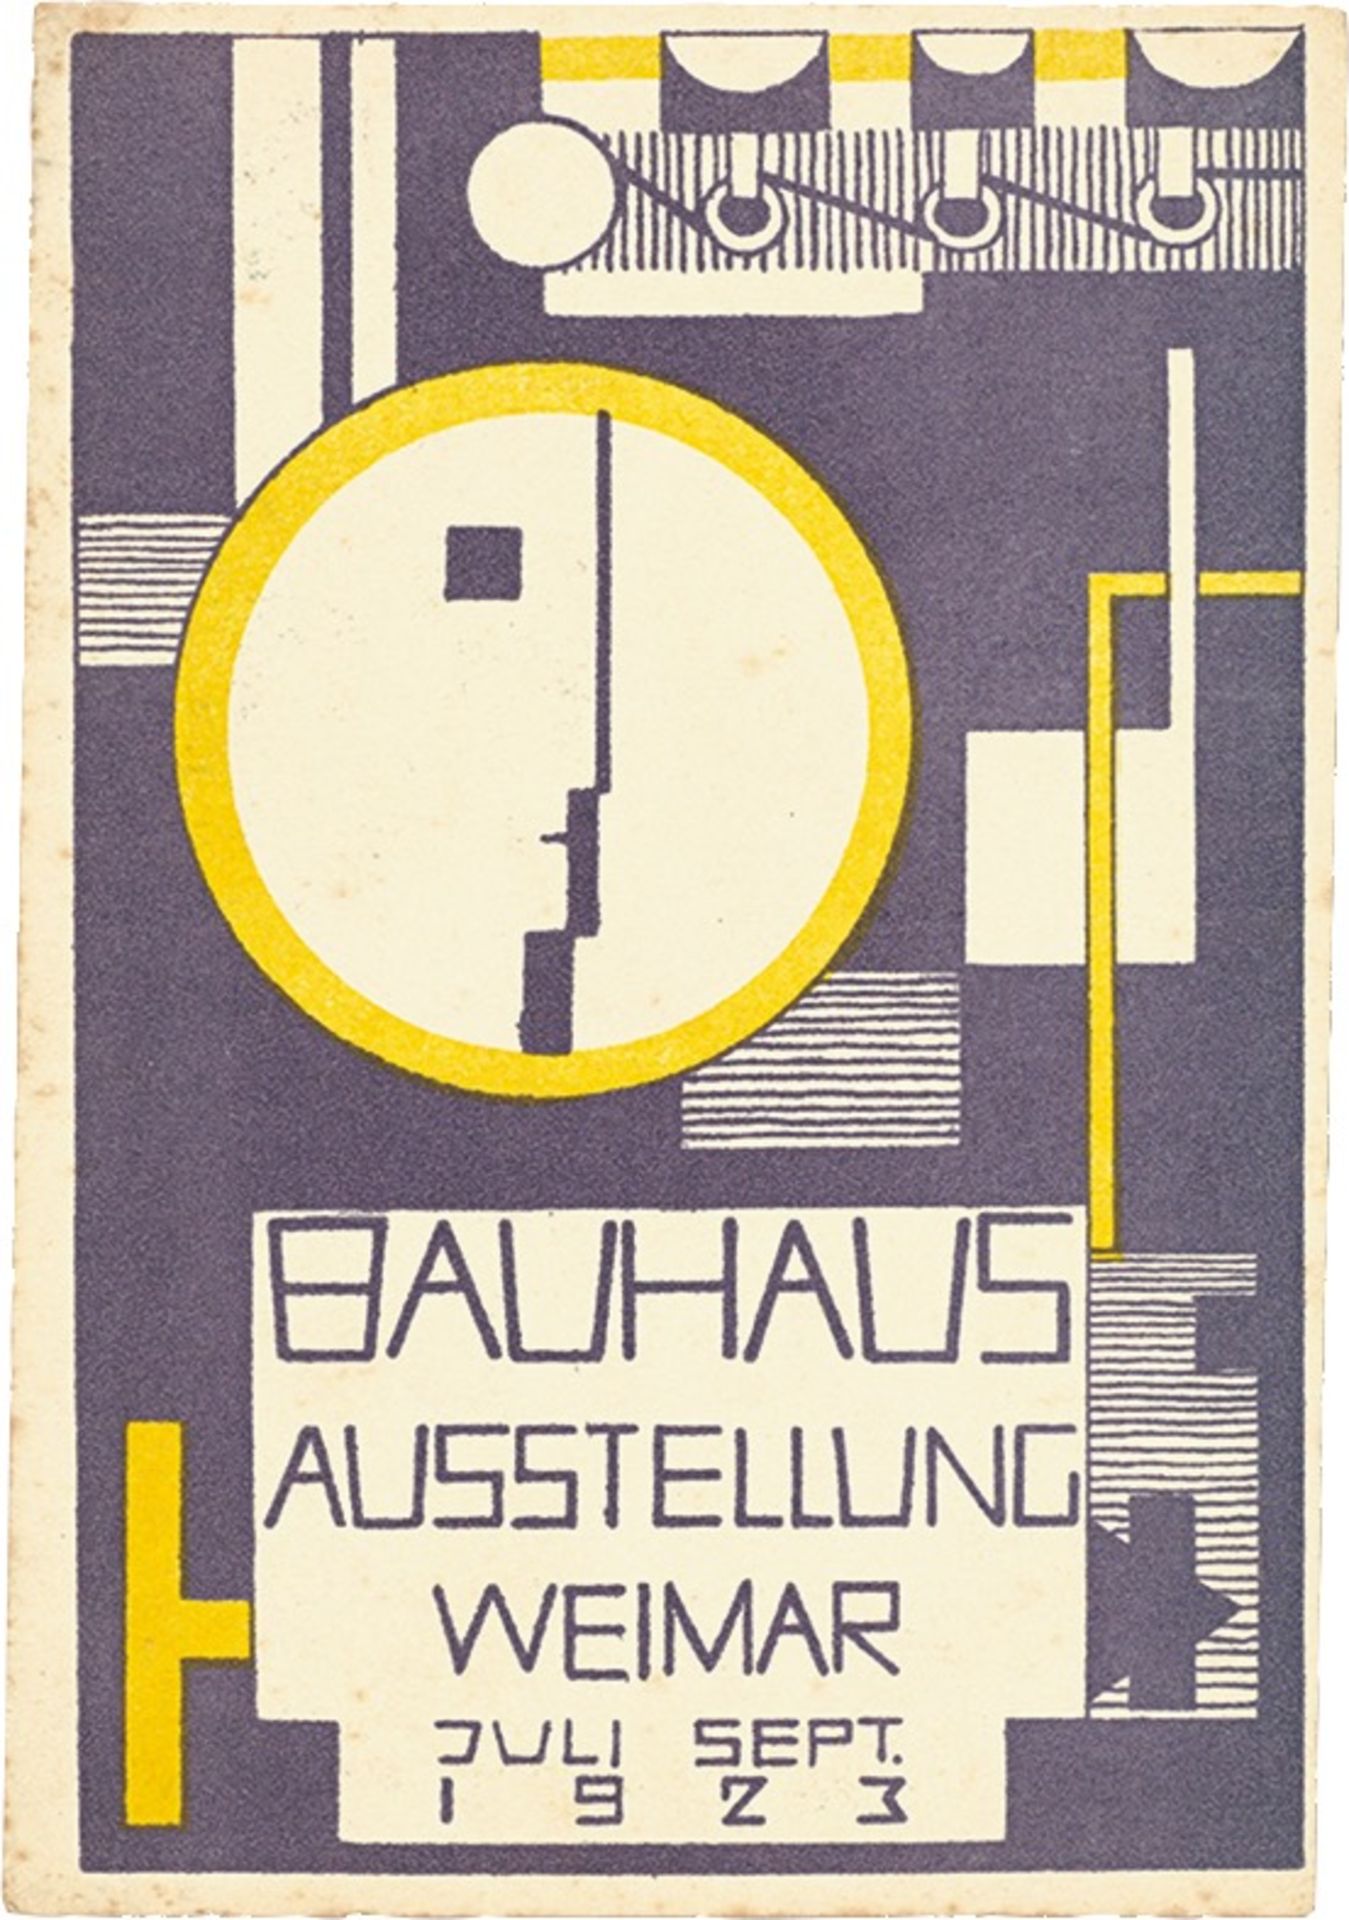 Bauhaus. ”Ausstellung Weimar 1923” – 20 postcards by various Bauhaus artists. 1923 - Image 10 of 20